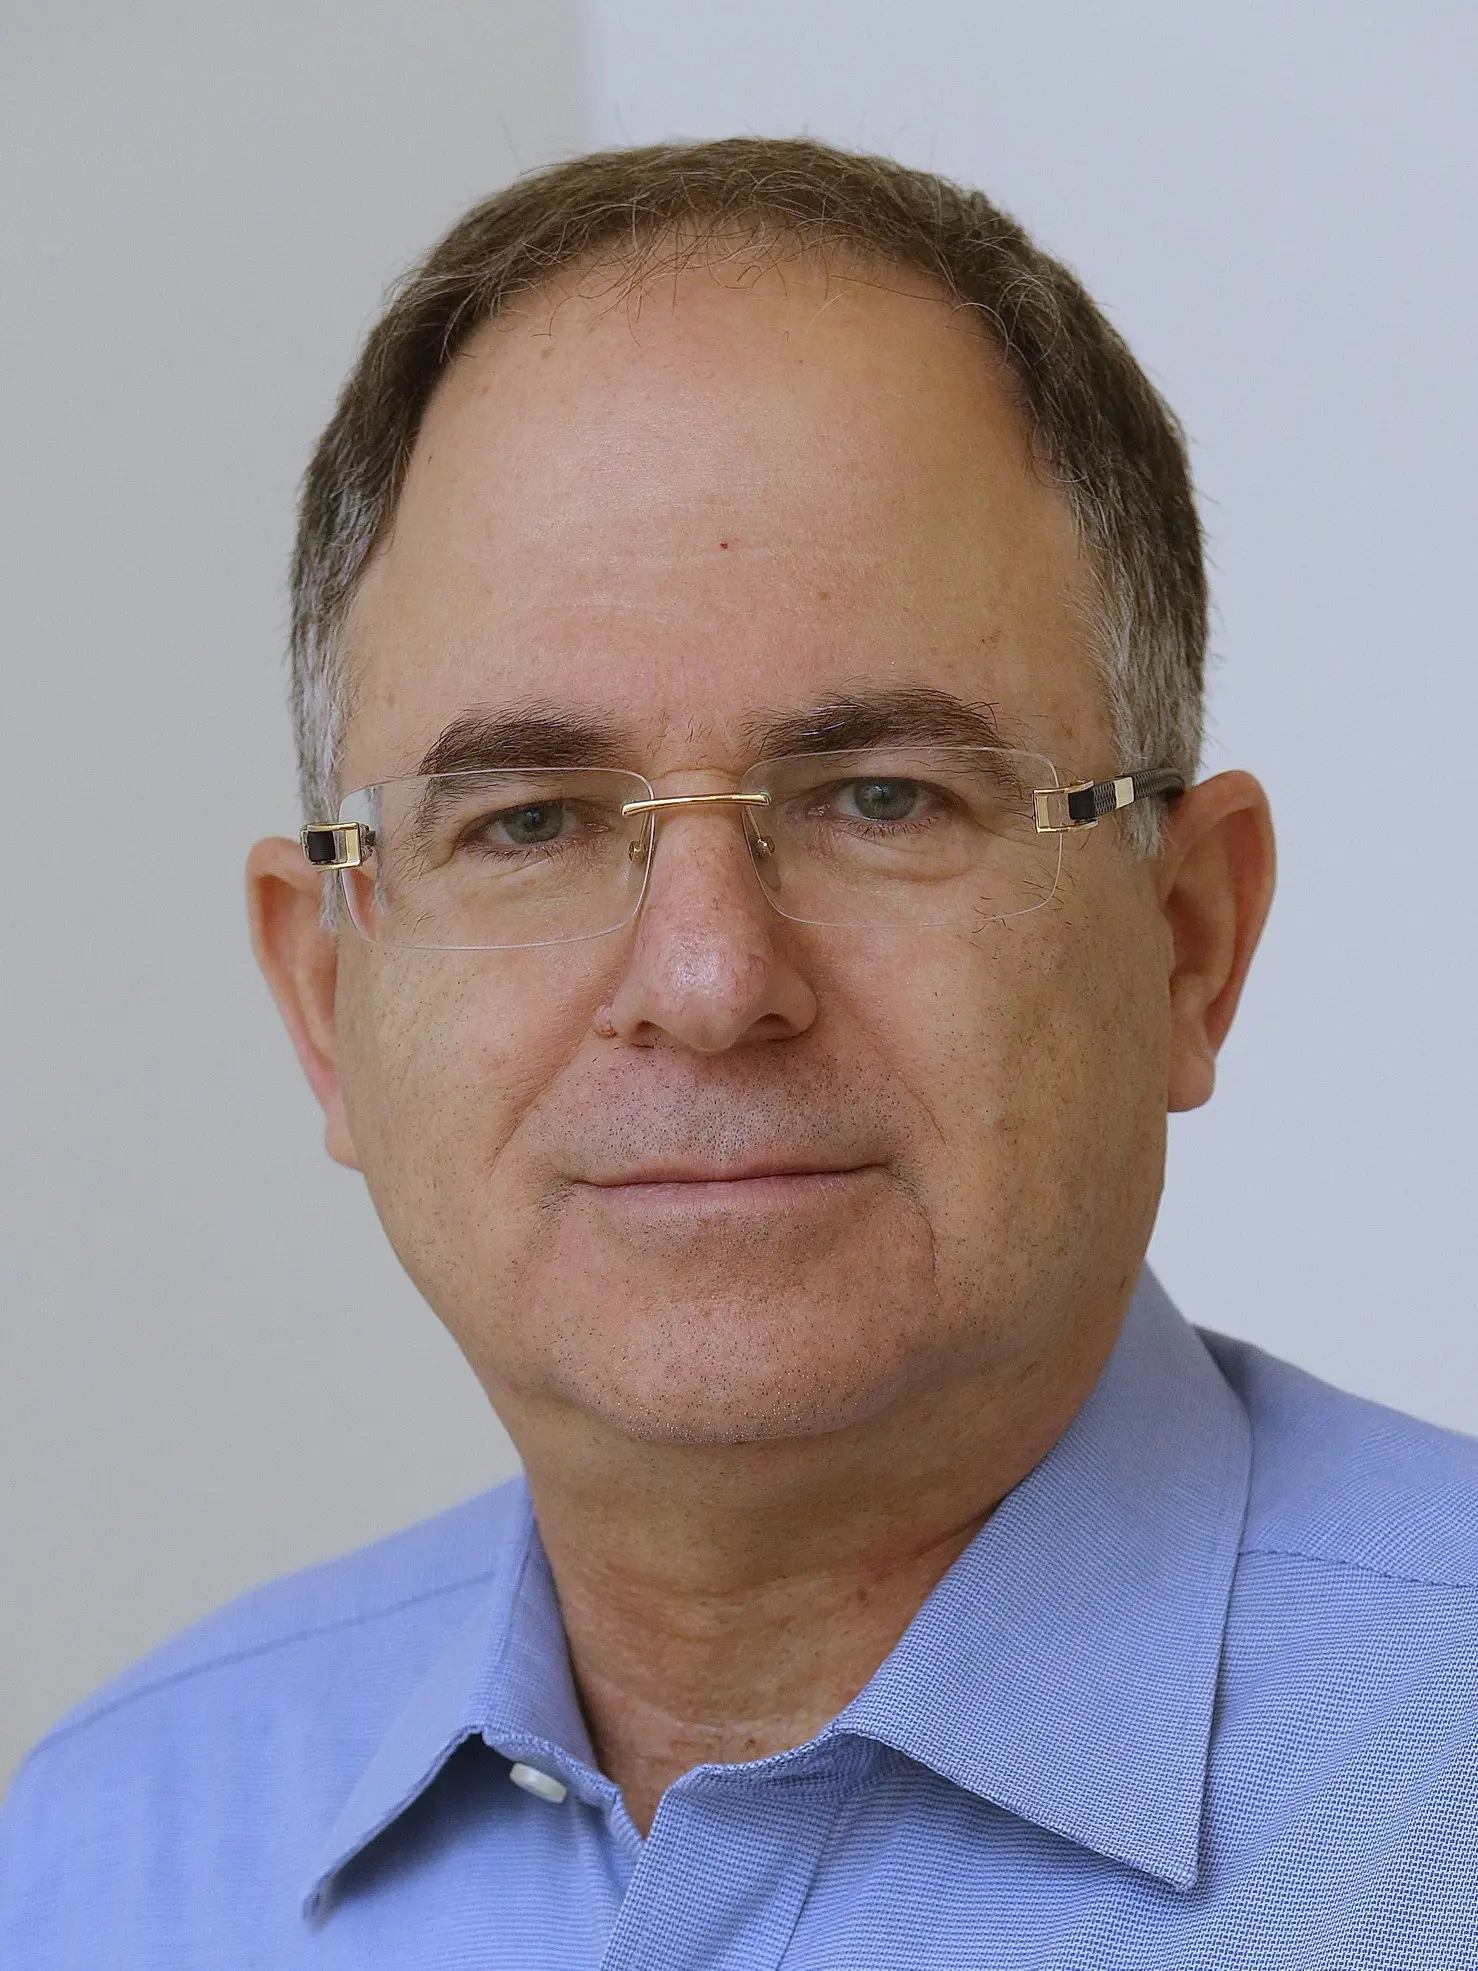 הכותב הוא אלי פרנק, יו"ר הלשכה לטכנולוגיות המידע בישראל